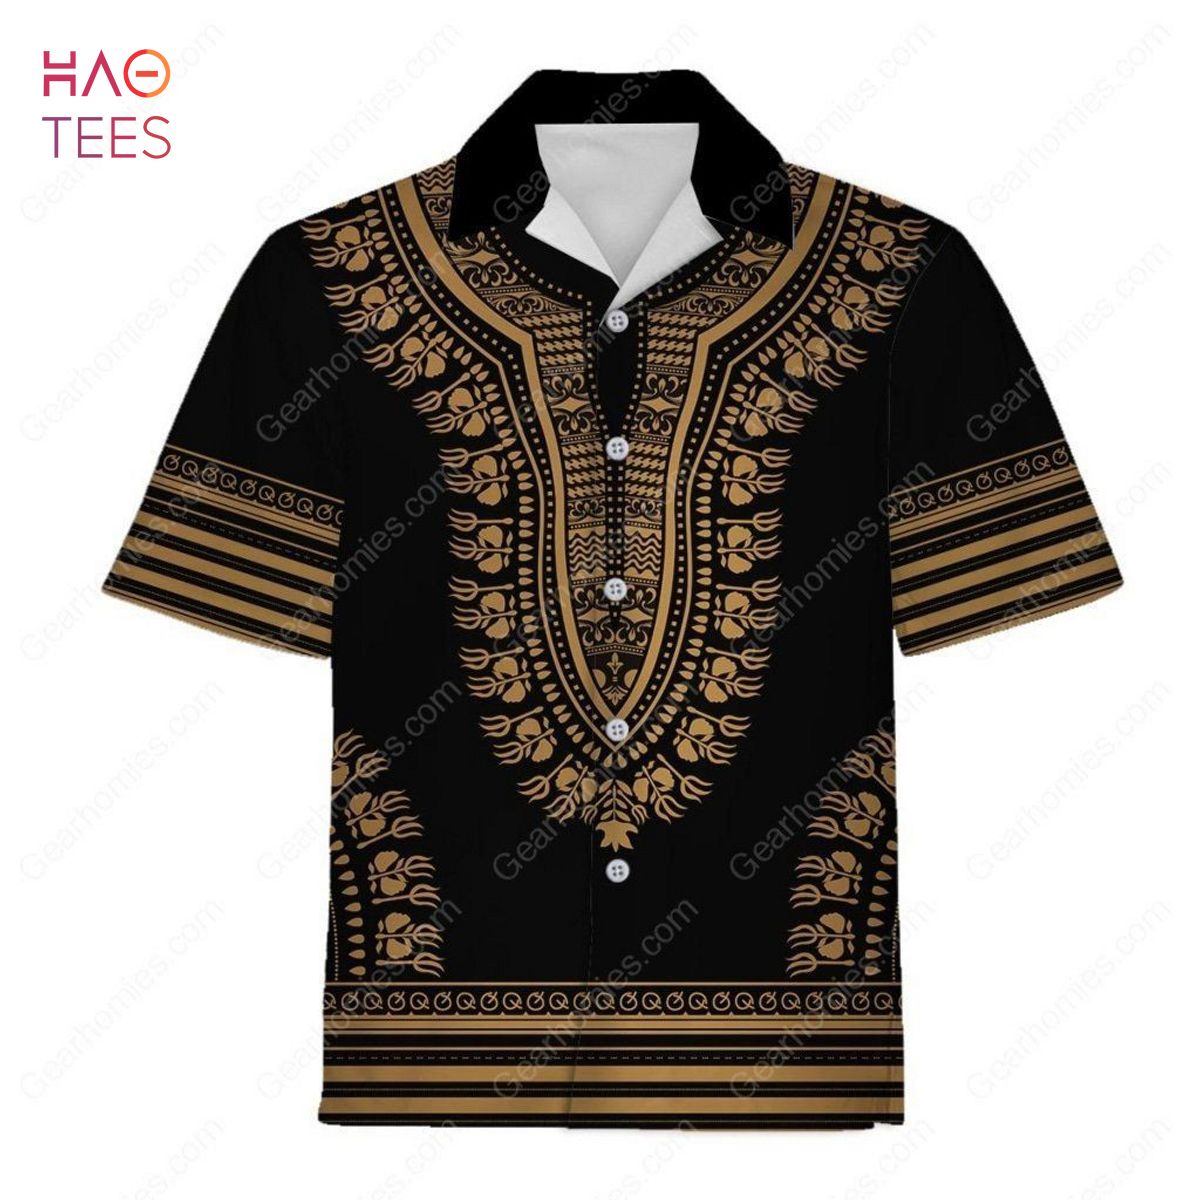 NEW Gold African Dashiki Hawaiian Shirt